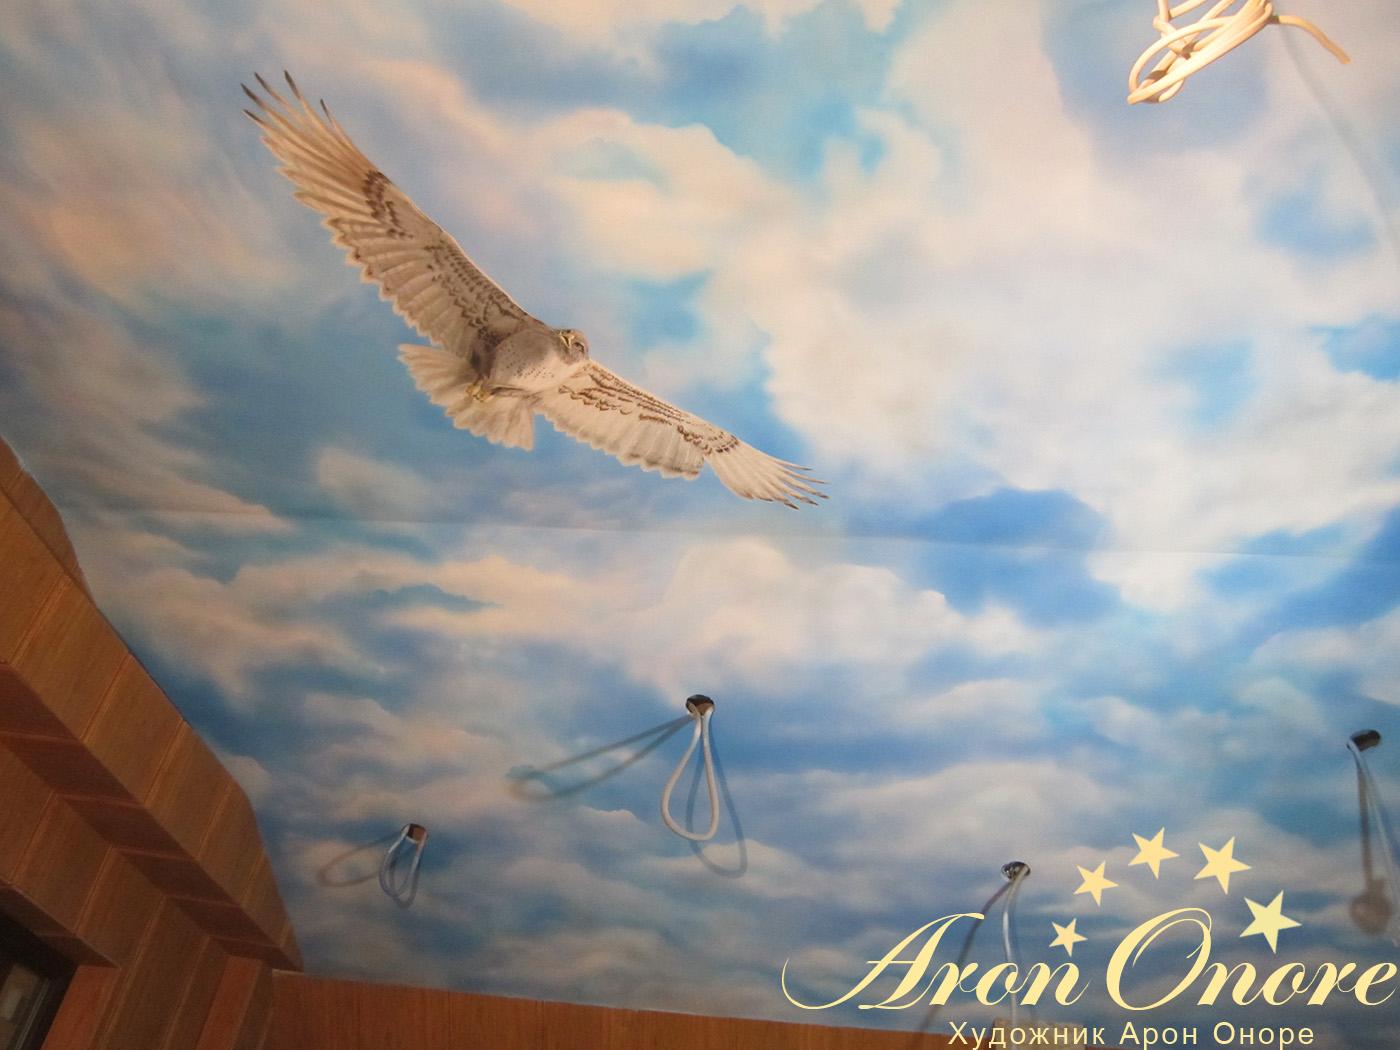 Художественная роспись потолка: орел в полете